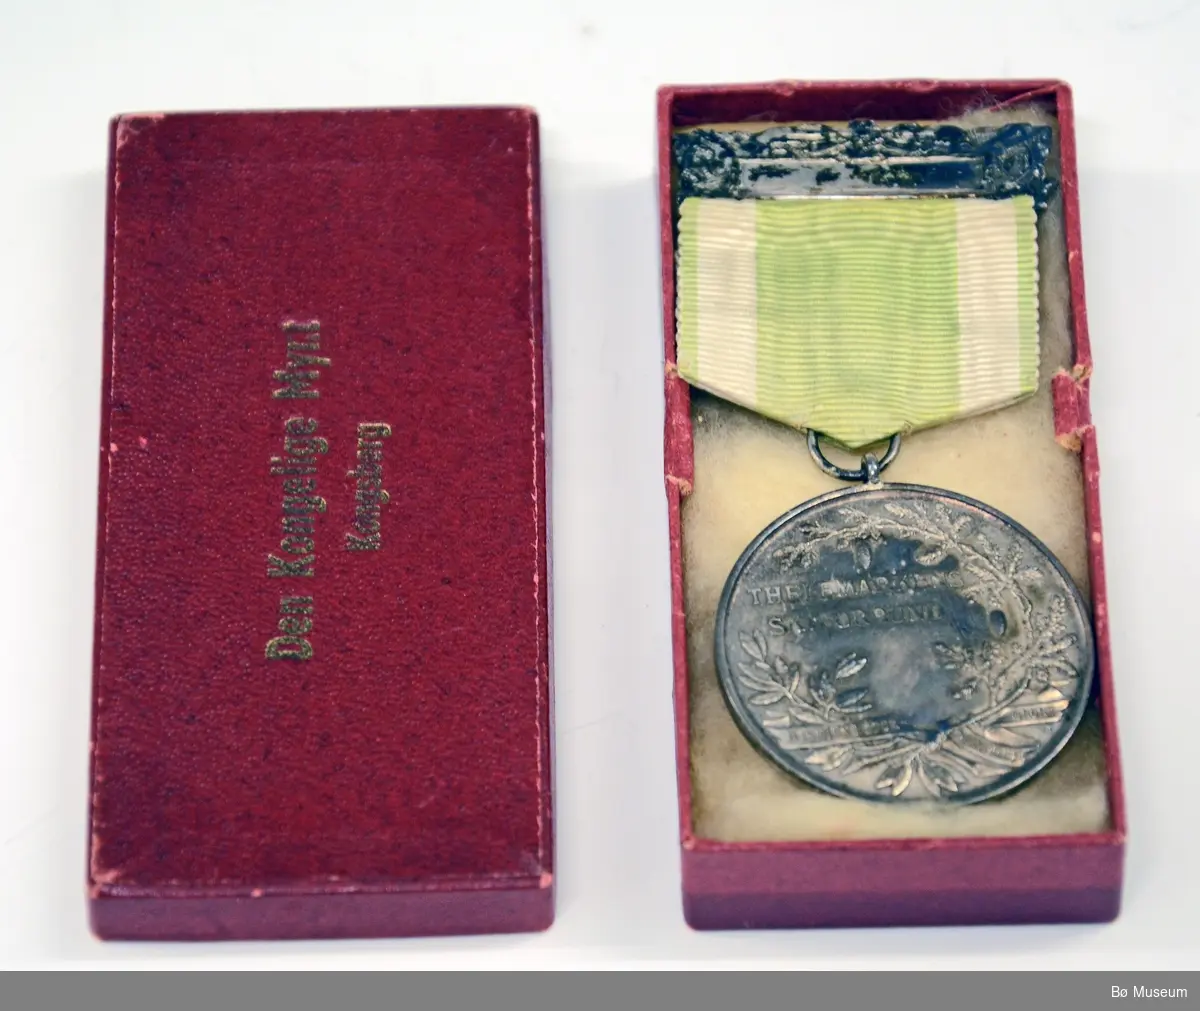 Medalje (ant. deltakermedalje) med innskrift:
"THELEMARKENS SKIFORBUND" og "I SKIENS SPOR SUNDHED GROR" (på framsiden)
Bånd i hvitt og lysegrønt - falmet.